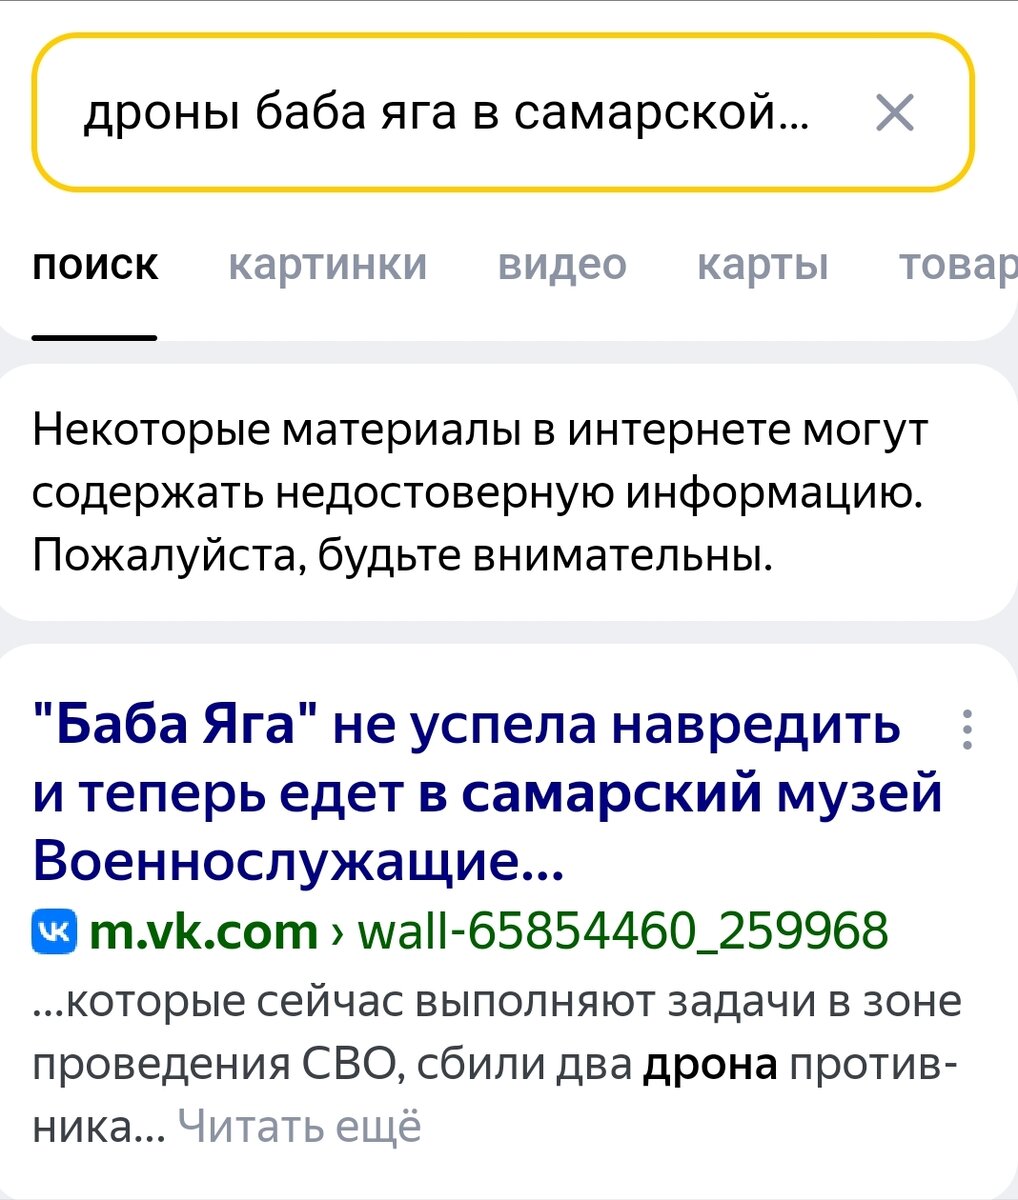 Первая строчка в результатах поиска в Яндексе выдала статью во ВКонтакте 